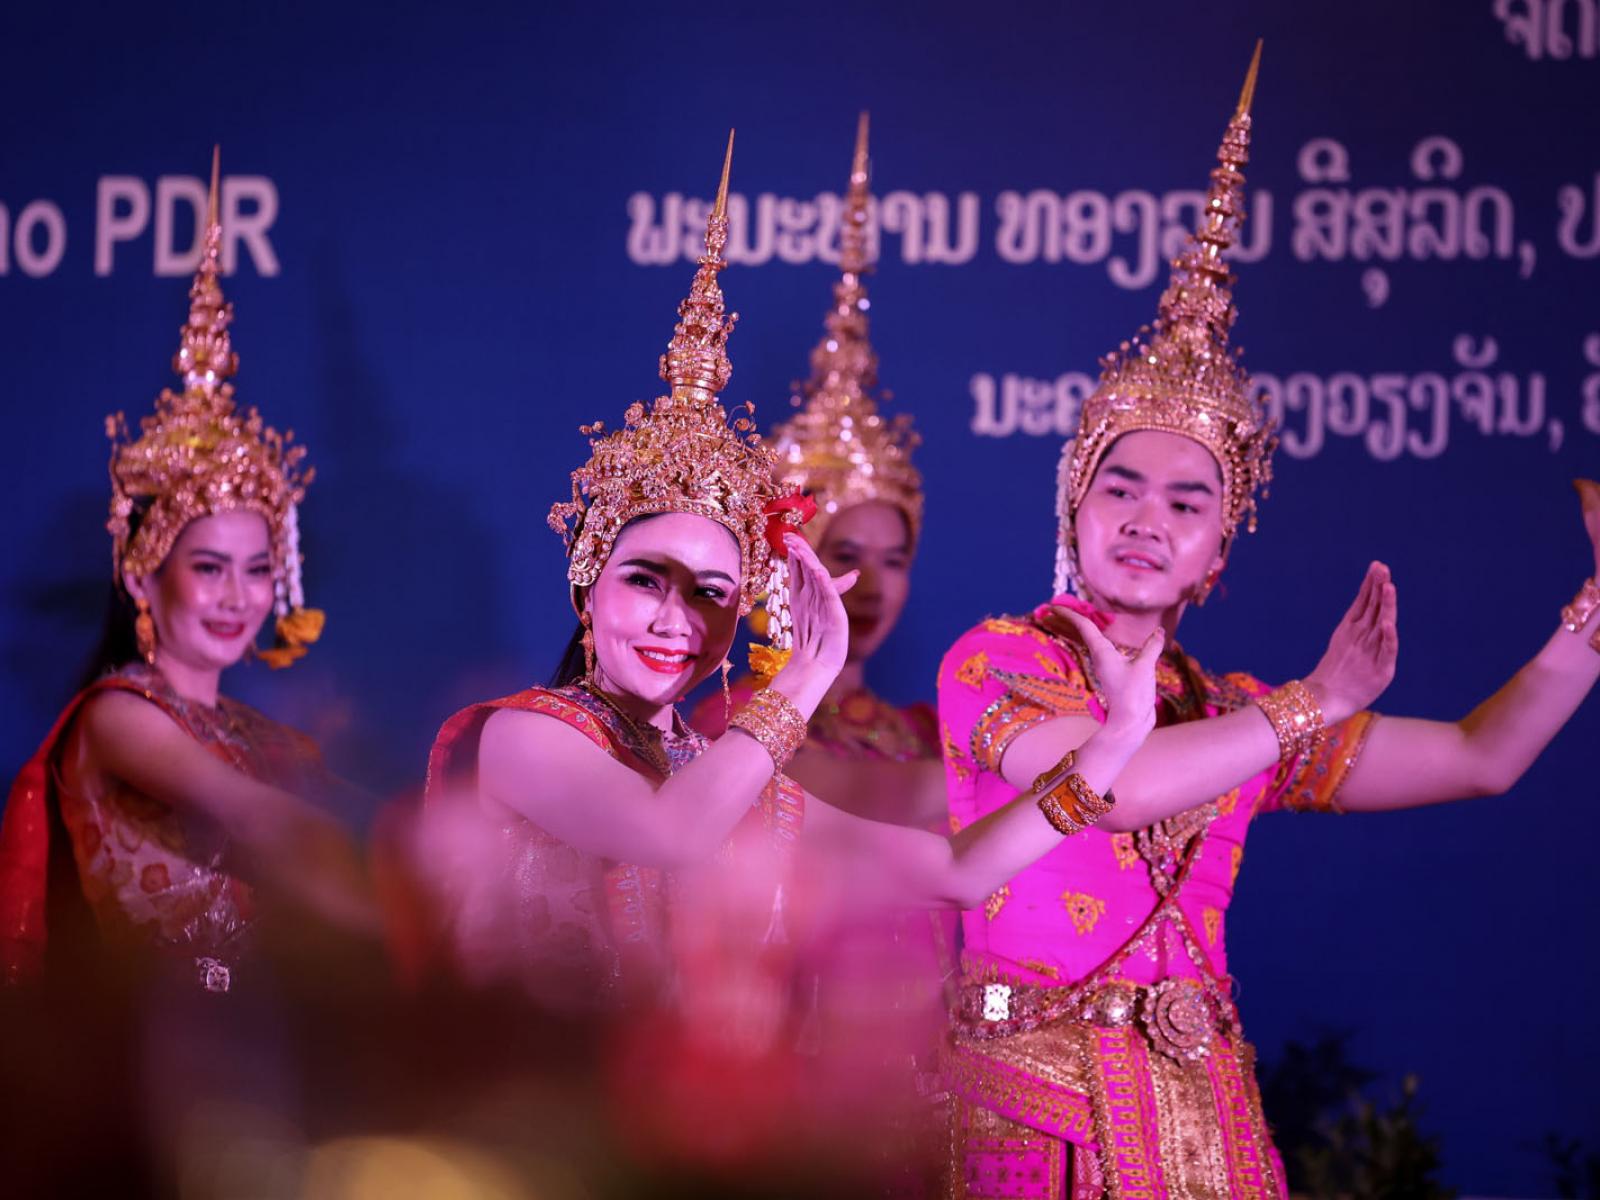 Des danseurs laotiens effectuent une danse traditionnelle